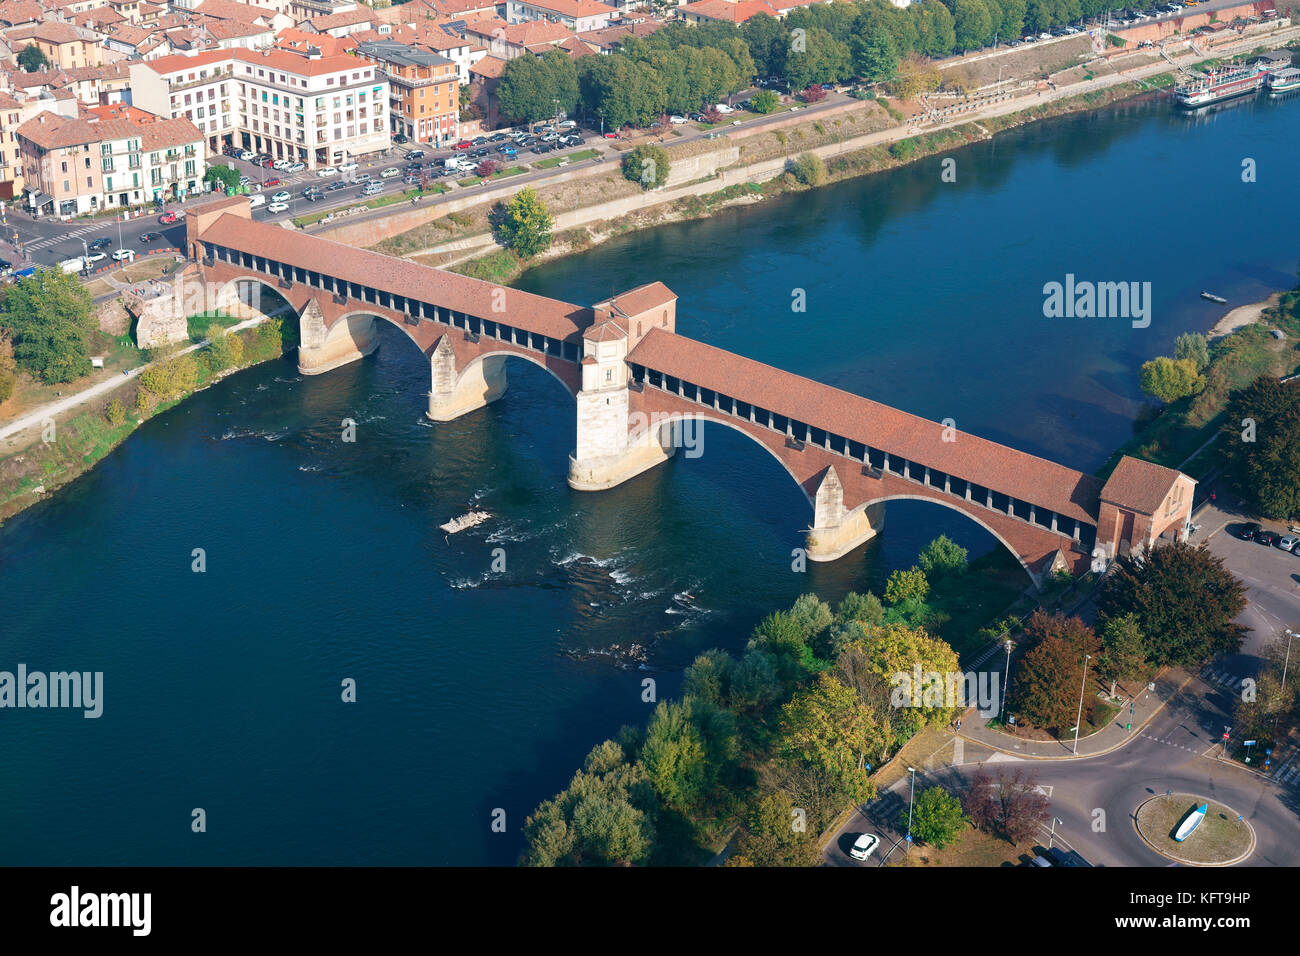 VISTA AEREA. Storico ponte coperto (Ponte Coperto) sul fiume Ticino, al centro si erge una piccola cappella. Pavia, Lombardia, Italia. Foto Stock